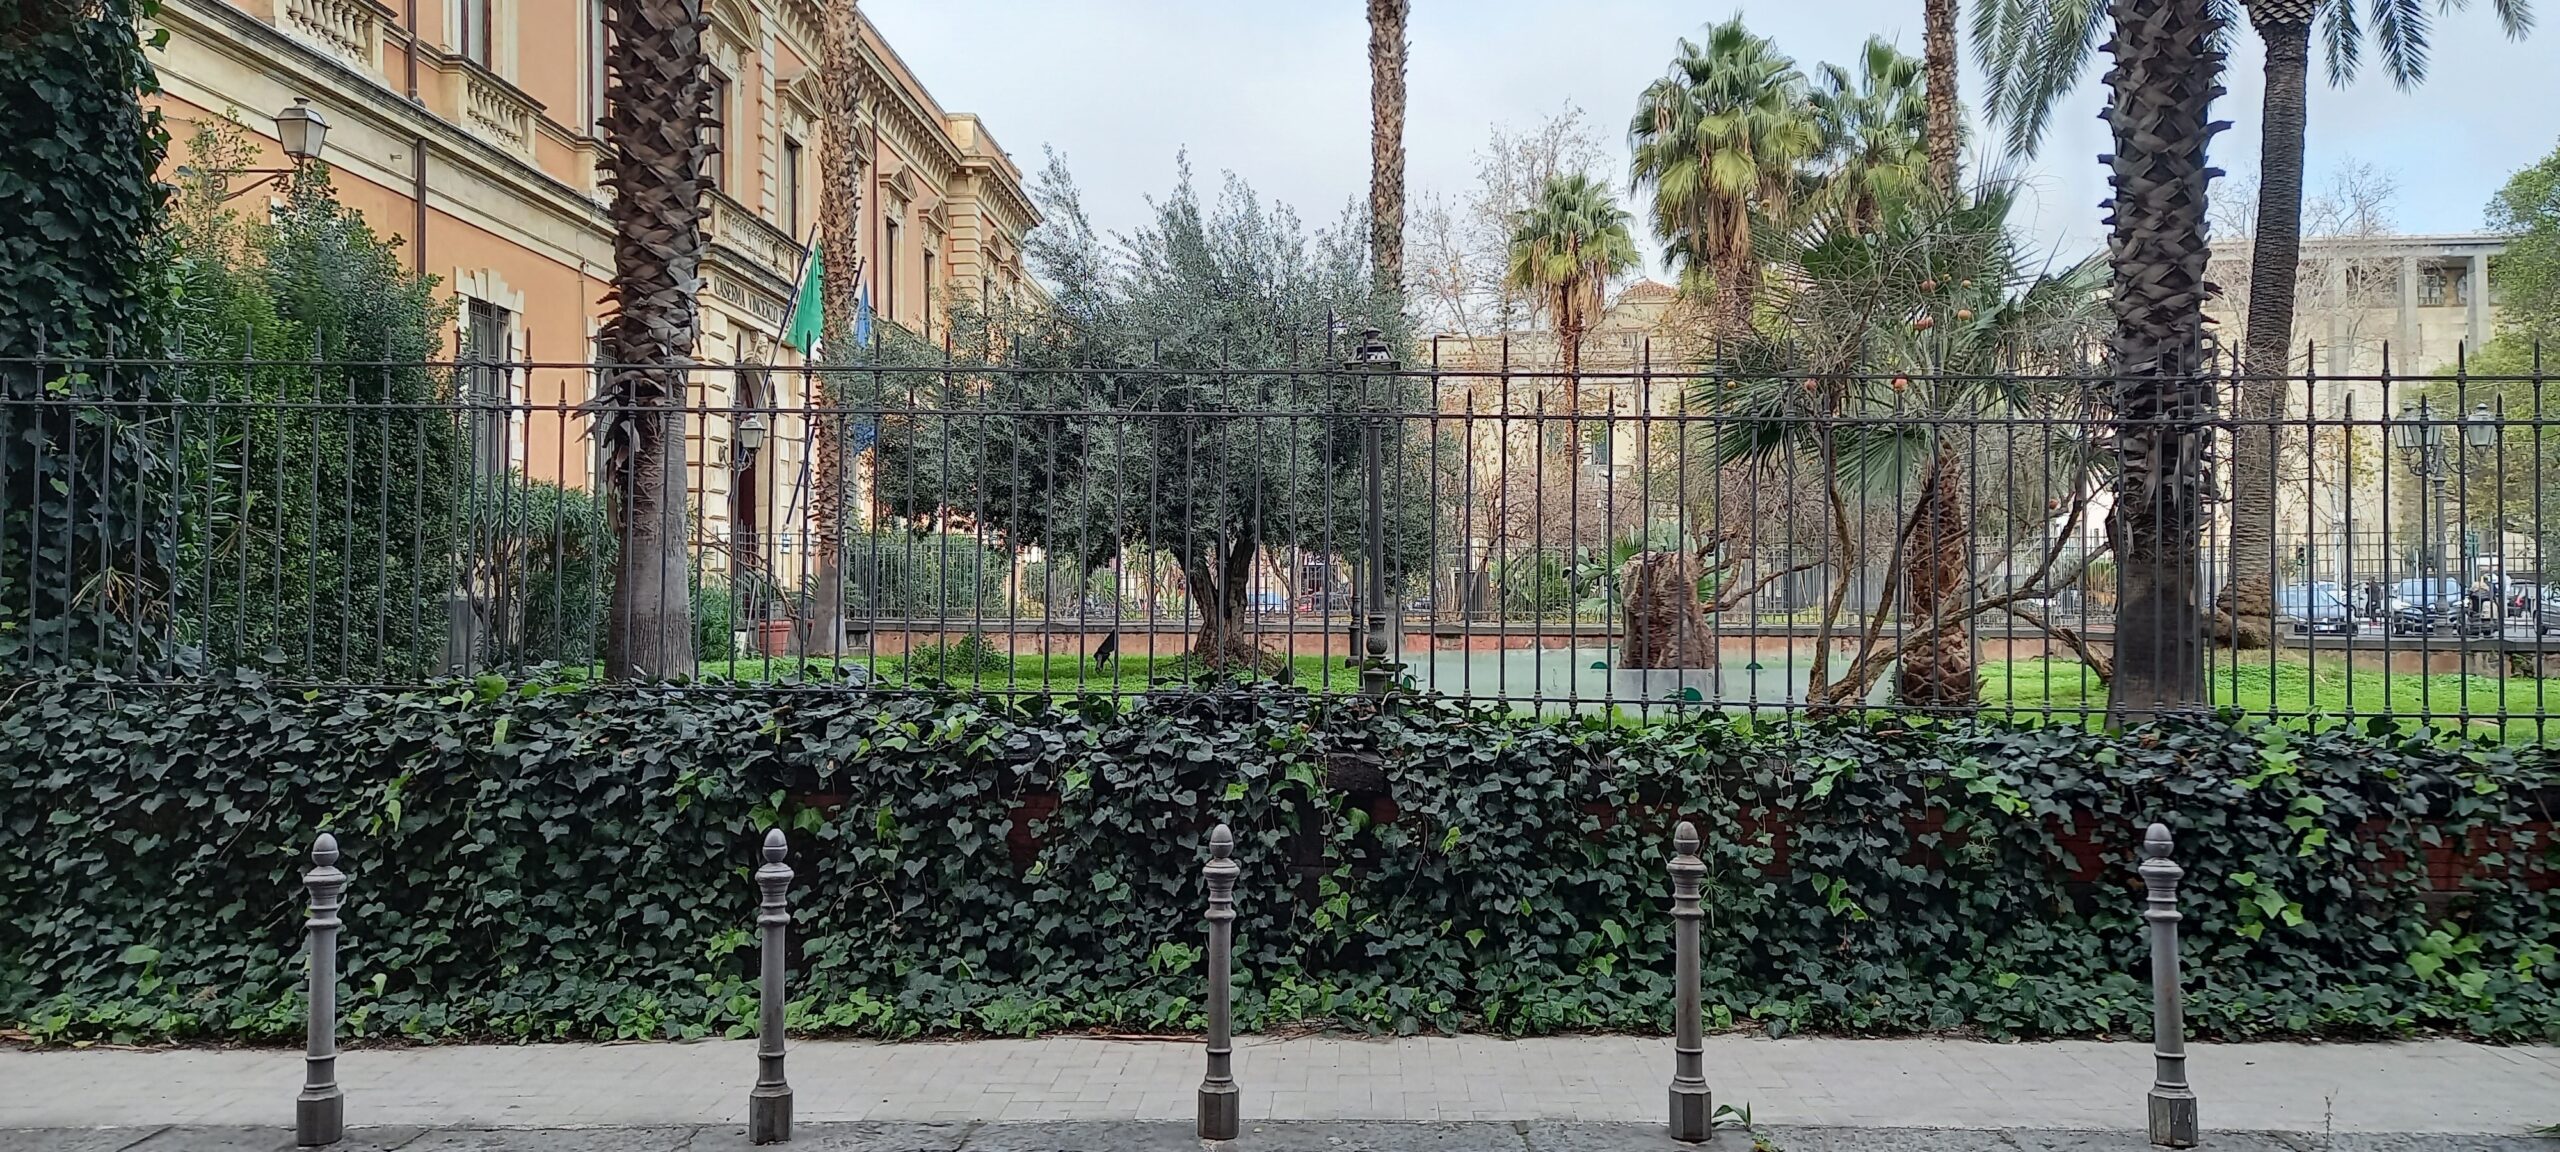 il parco ritrovato caserma carabinieri catania visionaria piazza giovanni verga 1mqdb